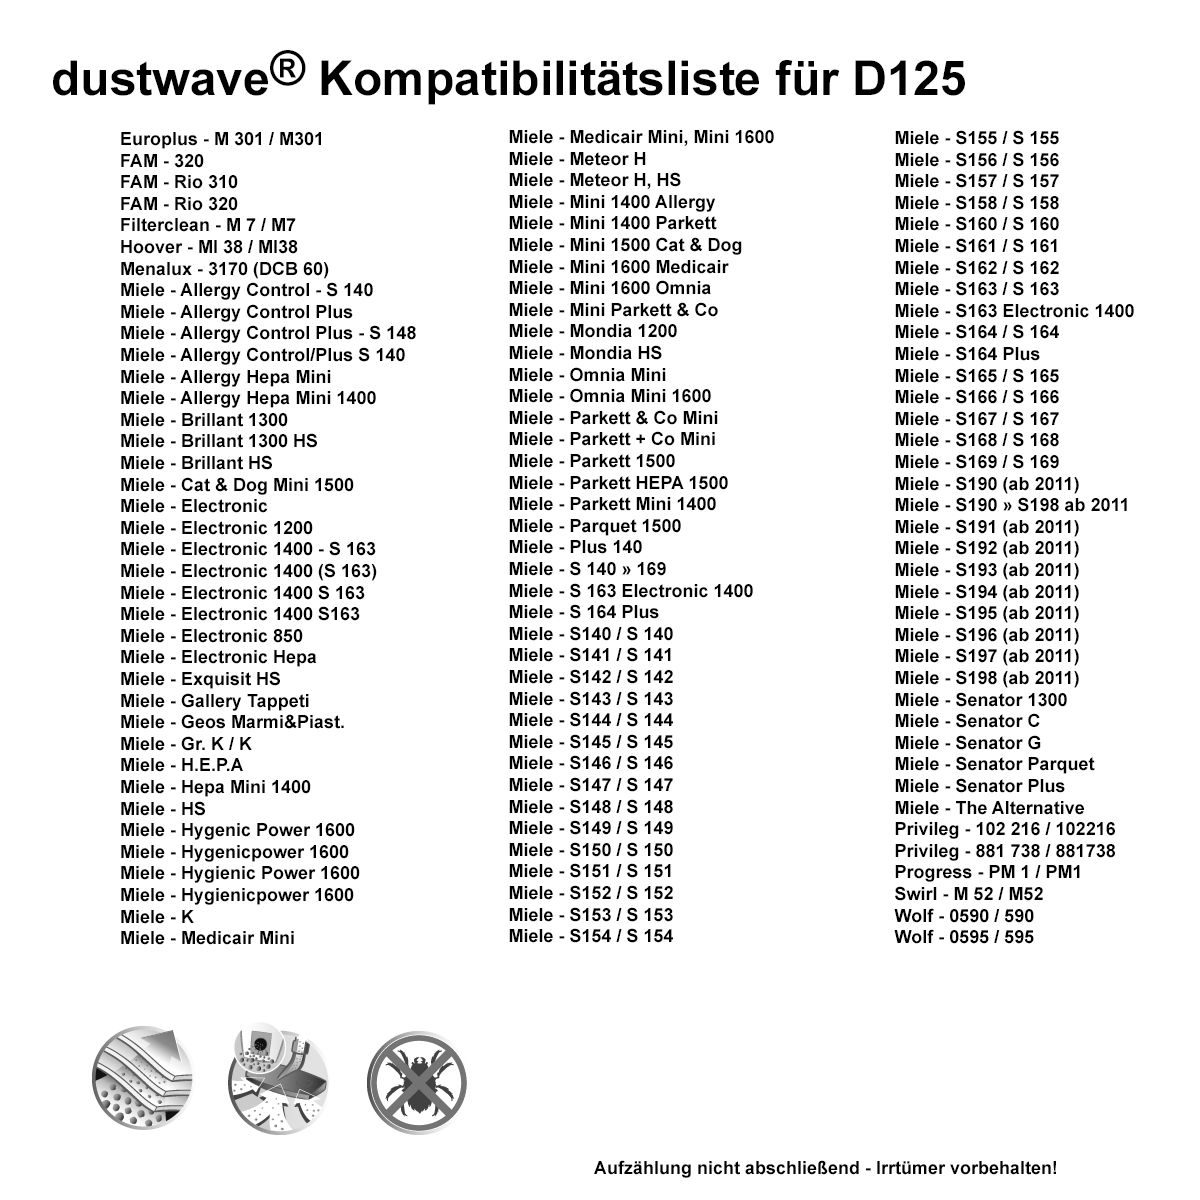 Dustwave® 5 Staubsaugerbeutel für Miele Allergy Control Plus S140 - hocheffizient, mehrlagiges Mikrovlies mit Hygieneverschluss - Made in Germany